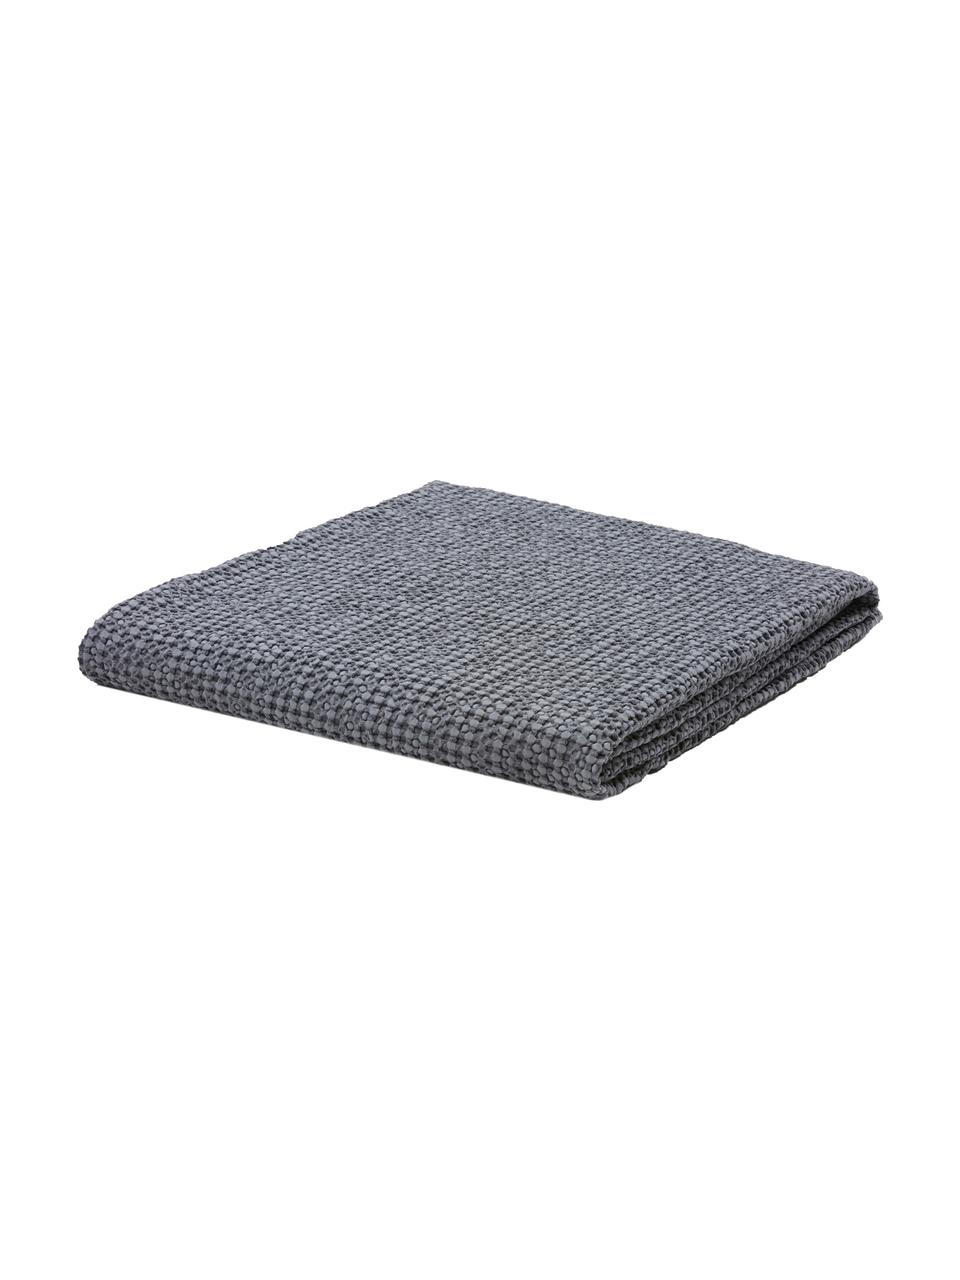 Colcha texturizada Vigo, 100% algodón, Azul oscuro, An 220 x L 240 cm (para camas de 160 x 200 cm)